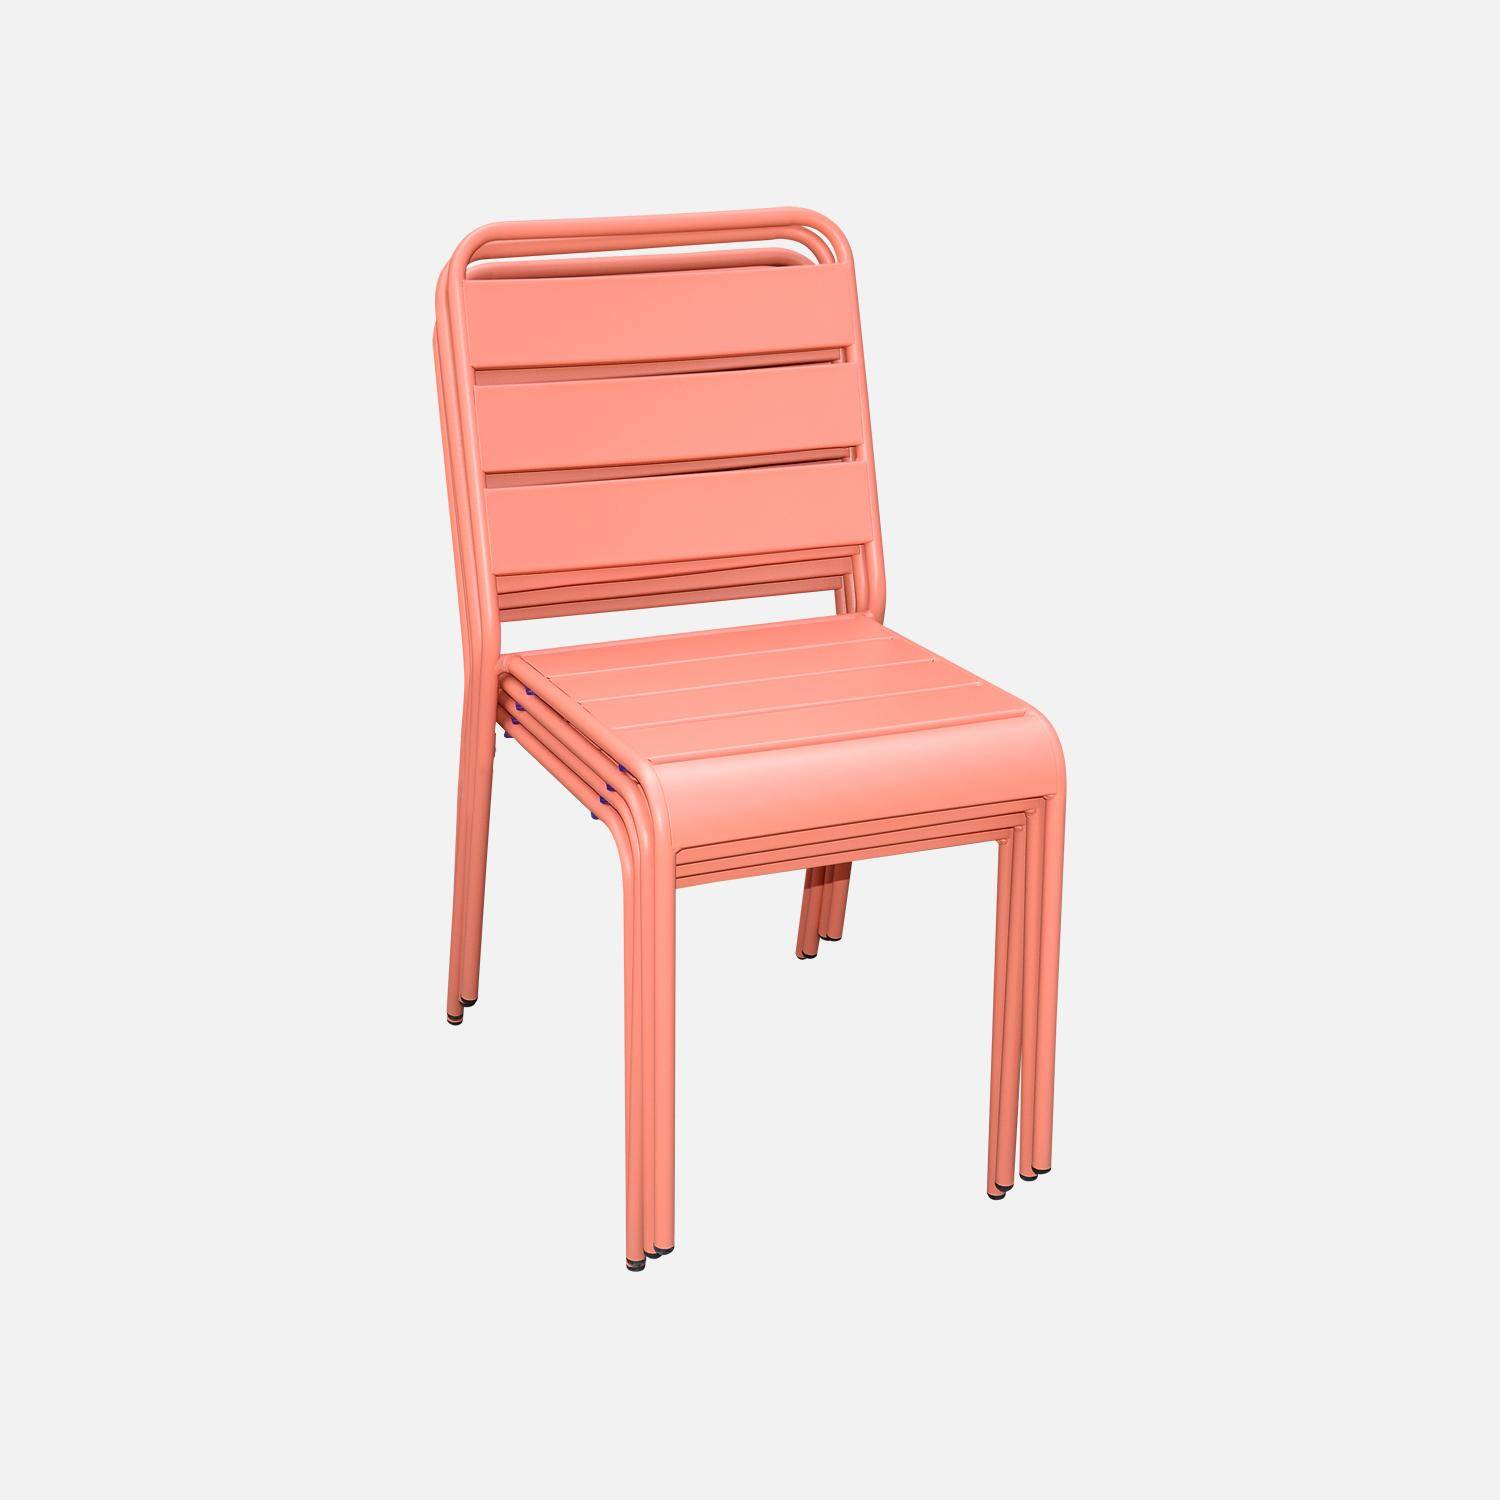 Lot de 4 chaises intérieur / extérieur en métal peinture antirouille empilables coloris rose saumon,sweeek,Photo3